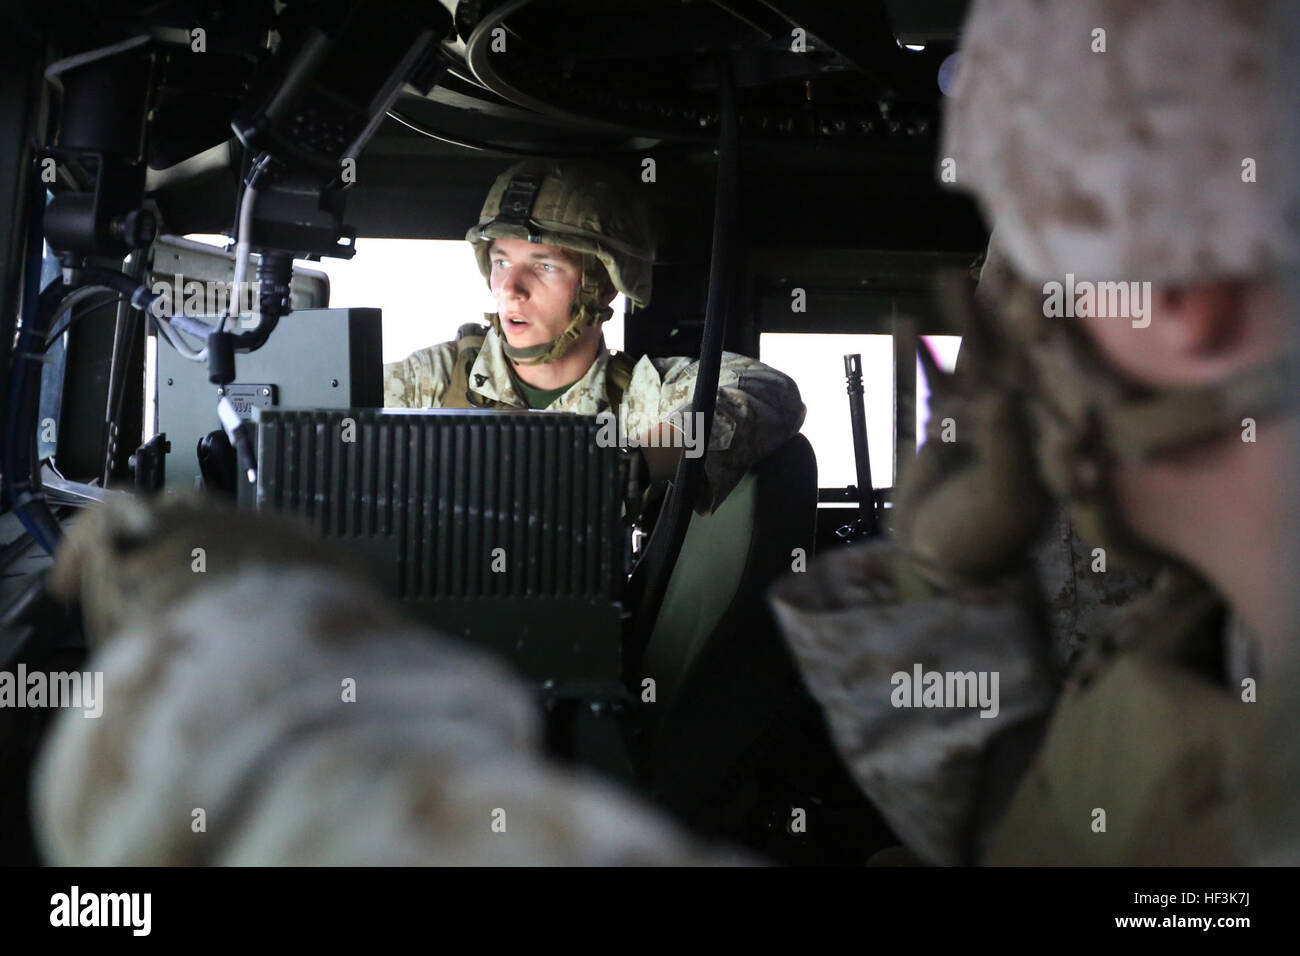 Cpl. Ian M. Keyser briefs miembros de su convoy en su misión durante un convoy de combate simulador en Marine Corps Base Camp Lejeune, N.C., Septiembre 9, 2015. Los infantes de marina con el 2º Batallón de Defensa Aérea a baja altitud probaron sus habilidades de combate y la toma de decisiones, ya que maniobrar a través de un desierto simulado, imitando los posibles escenarios que puedan surgir mientras en un escenario de la vida real. El simulador de capacitación permitió a los Marines a entrenar de forma eficiente en un entorno controlado, sin sacrificar la seguridad ni la precisión. Keyser es un artillero de defensa aérea de baja altitud con 2ª LAAD basados fuera del Marine Corps Foto de stock